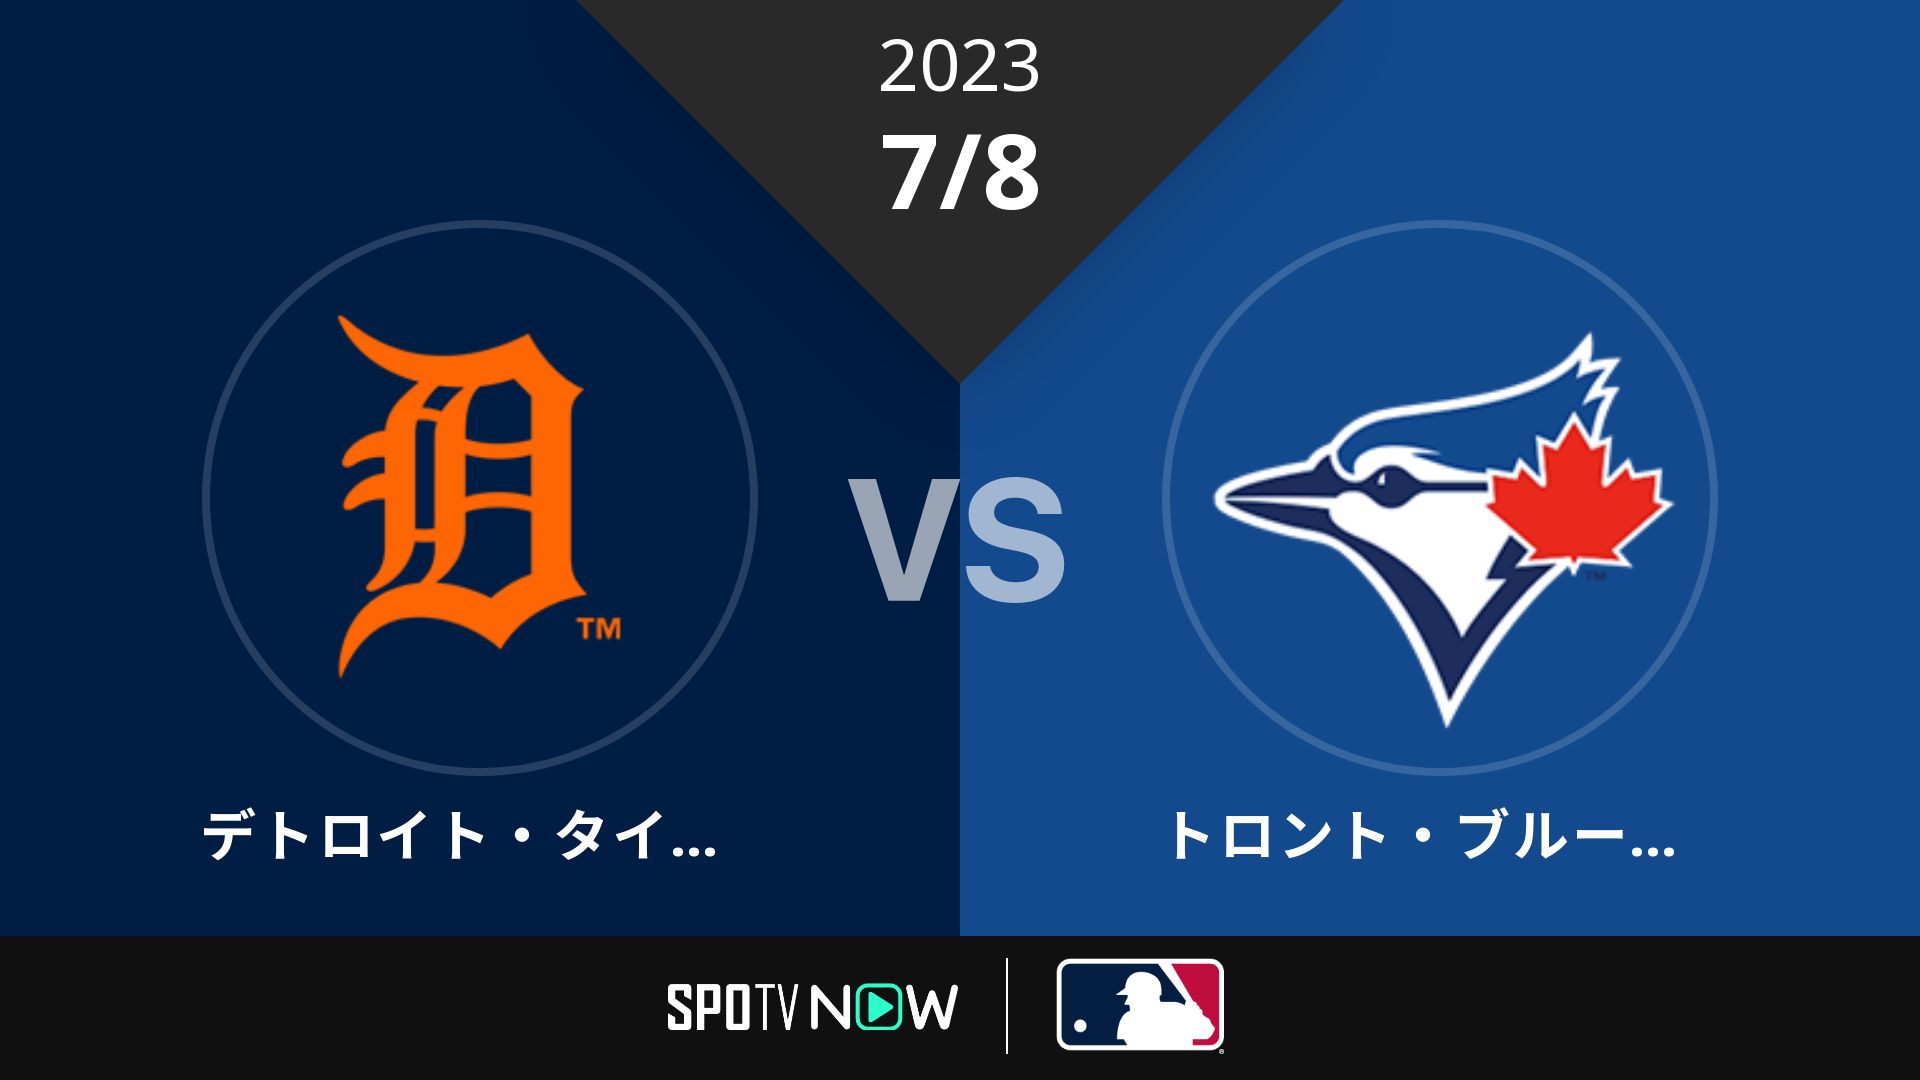 2023/7/8 タイガース vs ブルージェイズ [MLB]